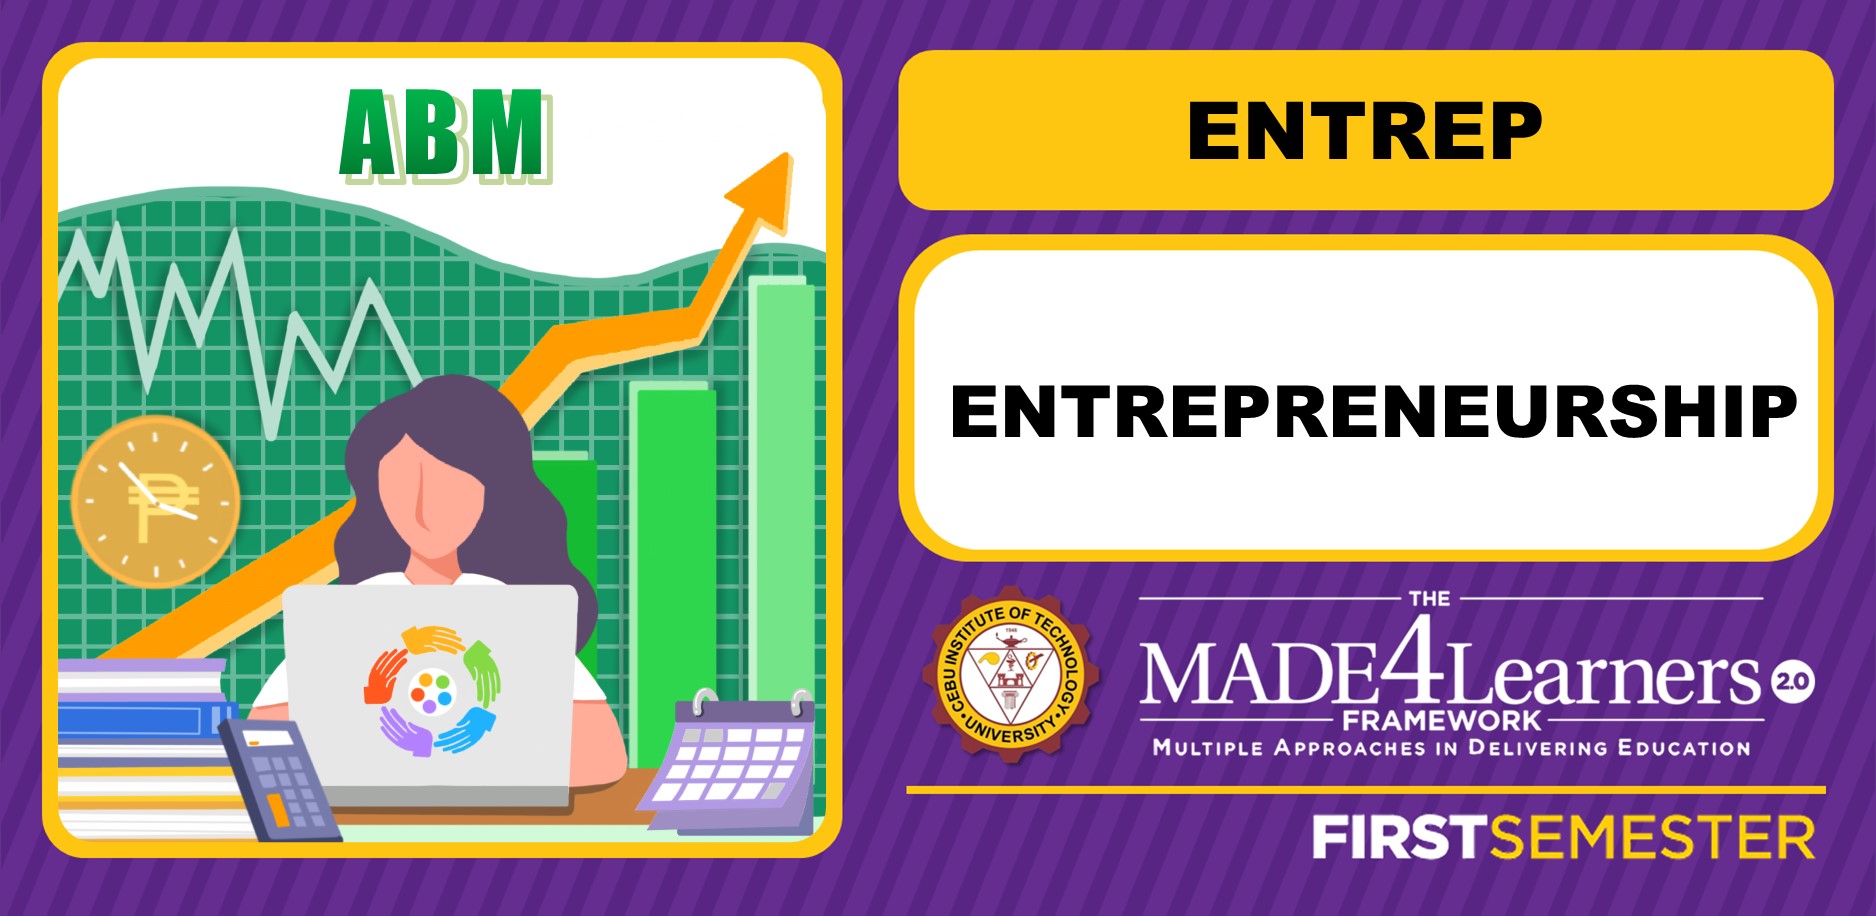 ENTREP: Entrepreneurship (Lopez)